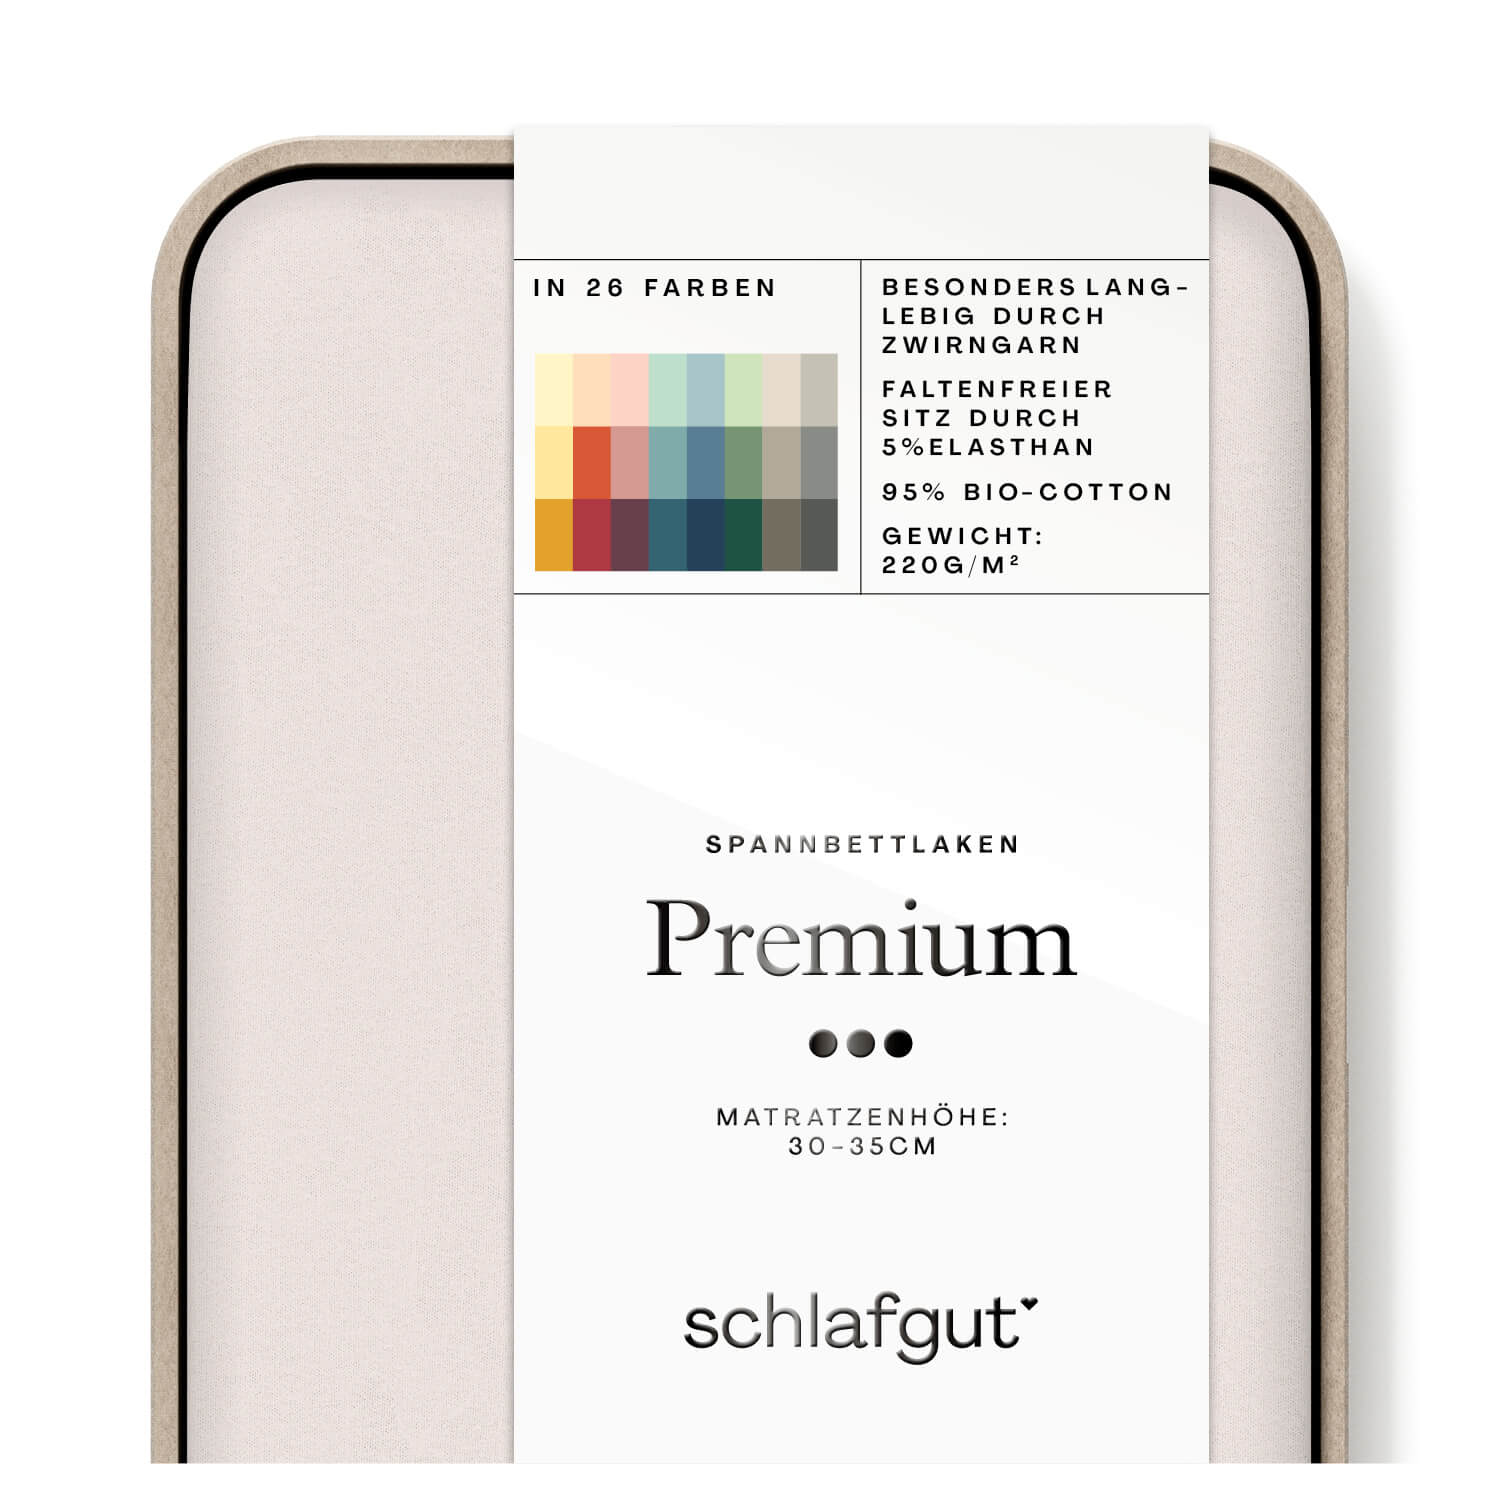 Das Produktbild vom Spannbettlaken der Reihe Premium in Farbe sand light von Schlafgut